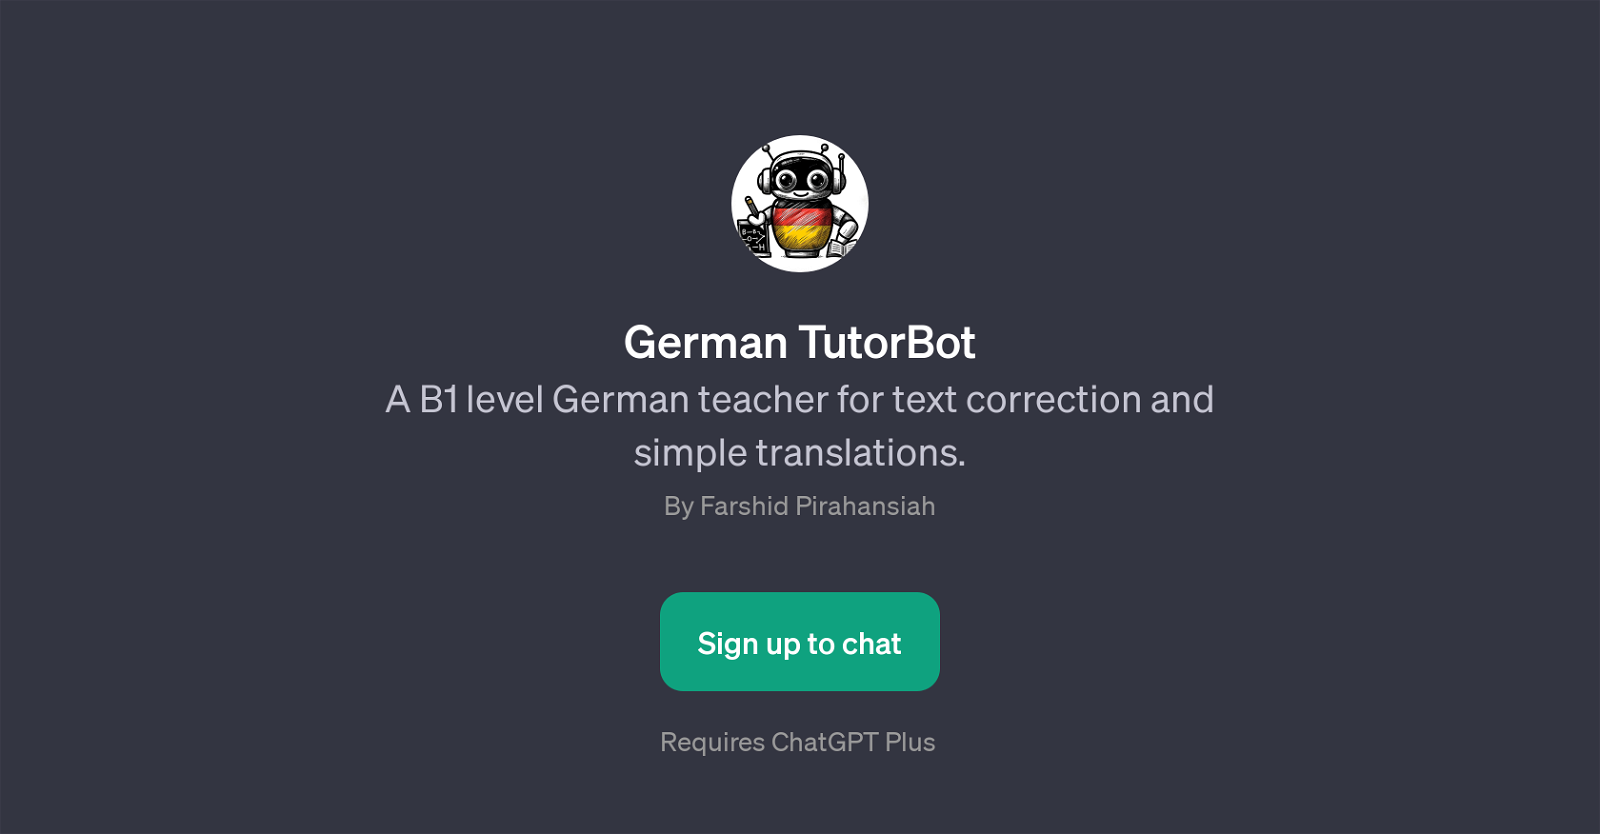 German TutorBot website